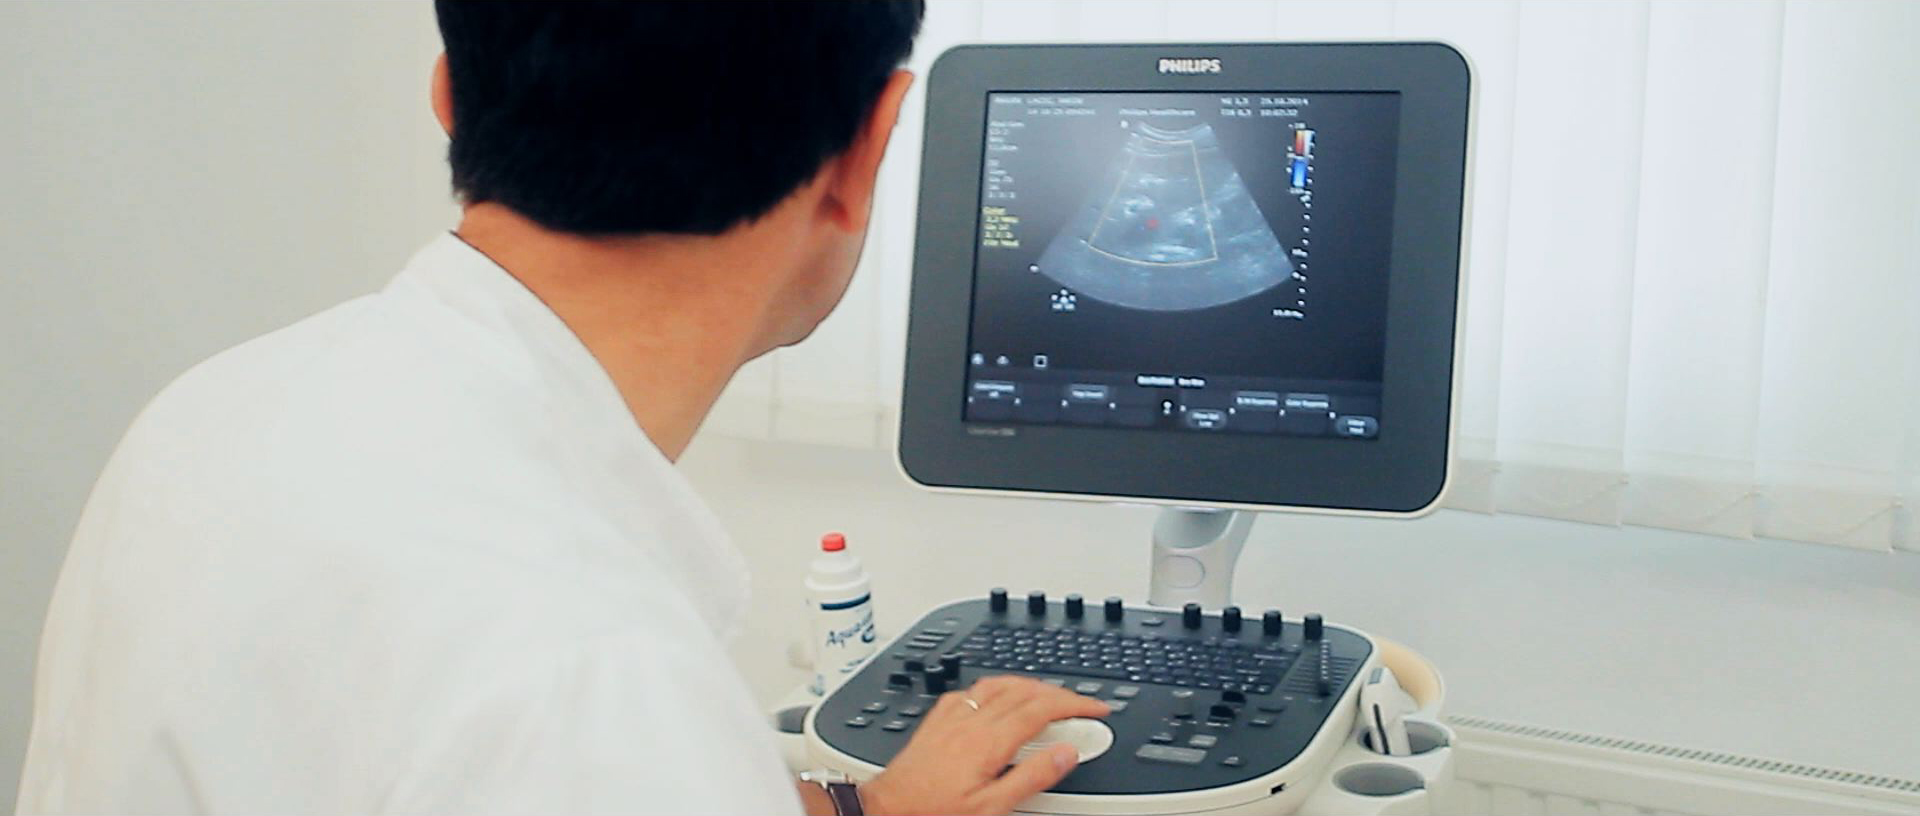 Ultrazvuk abdomena